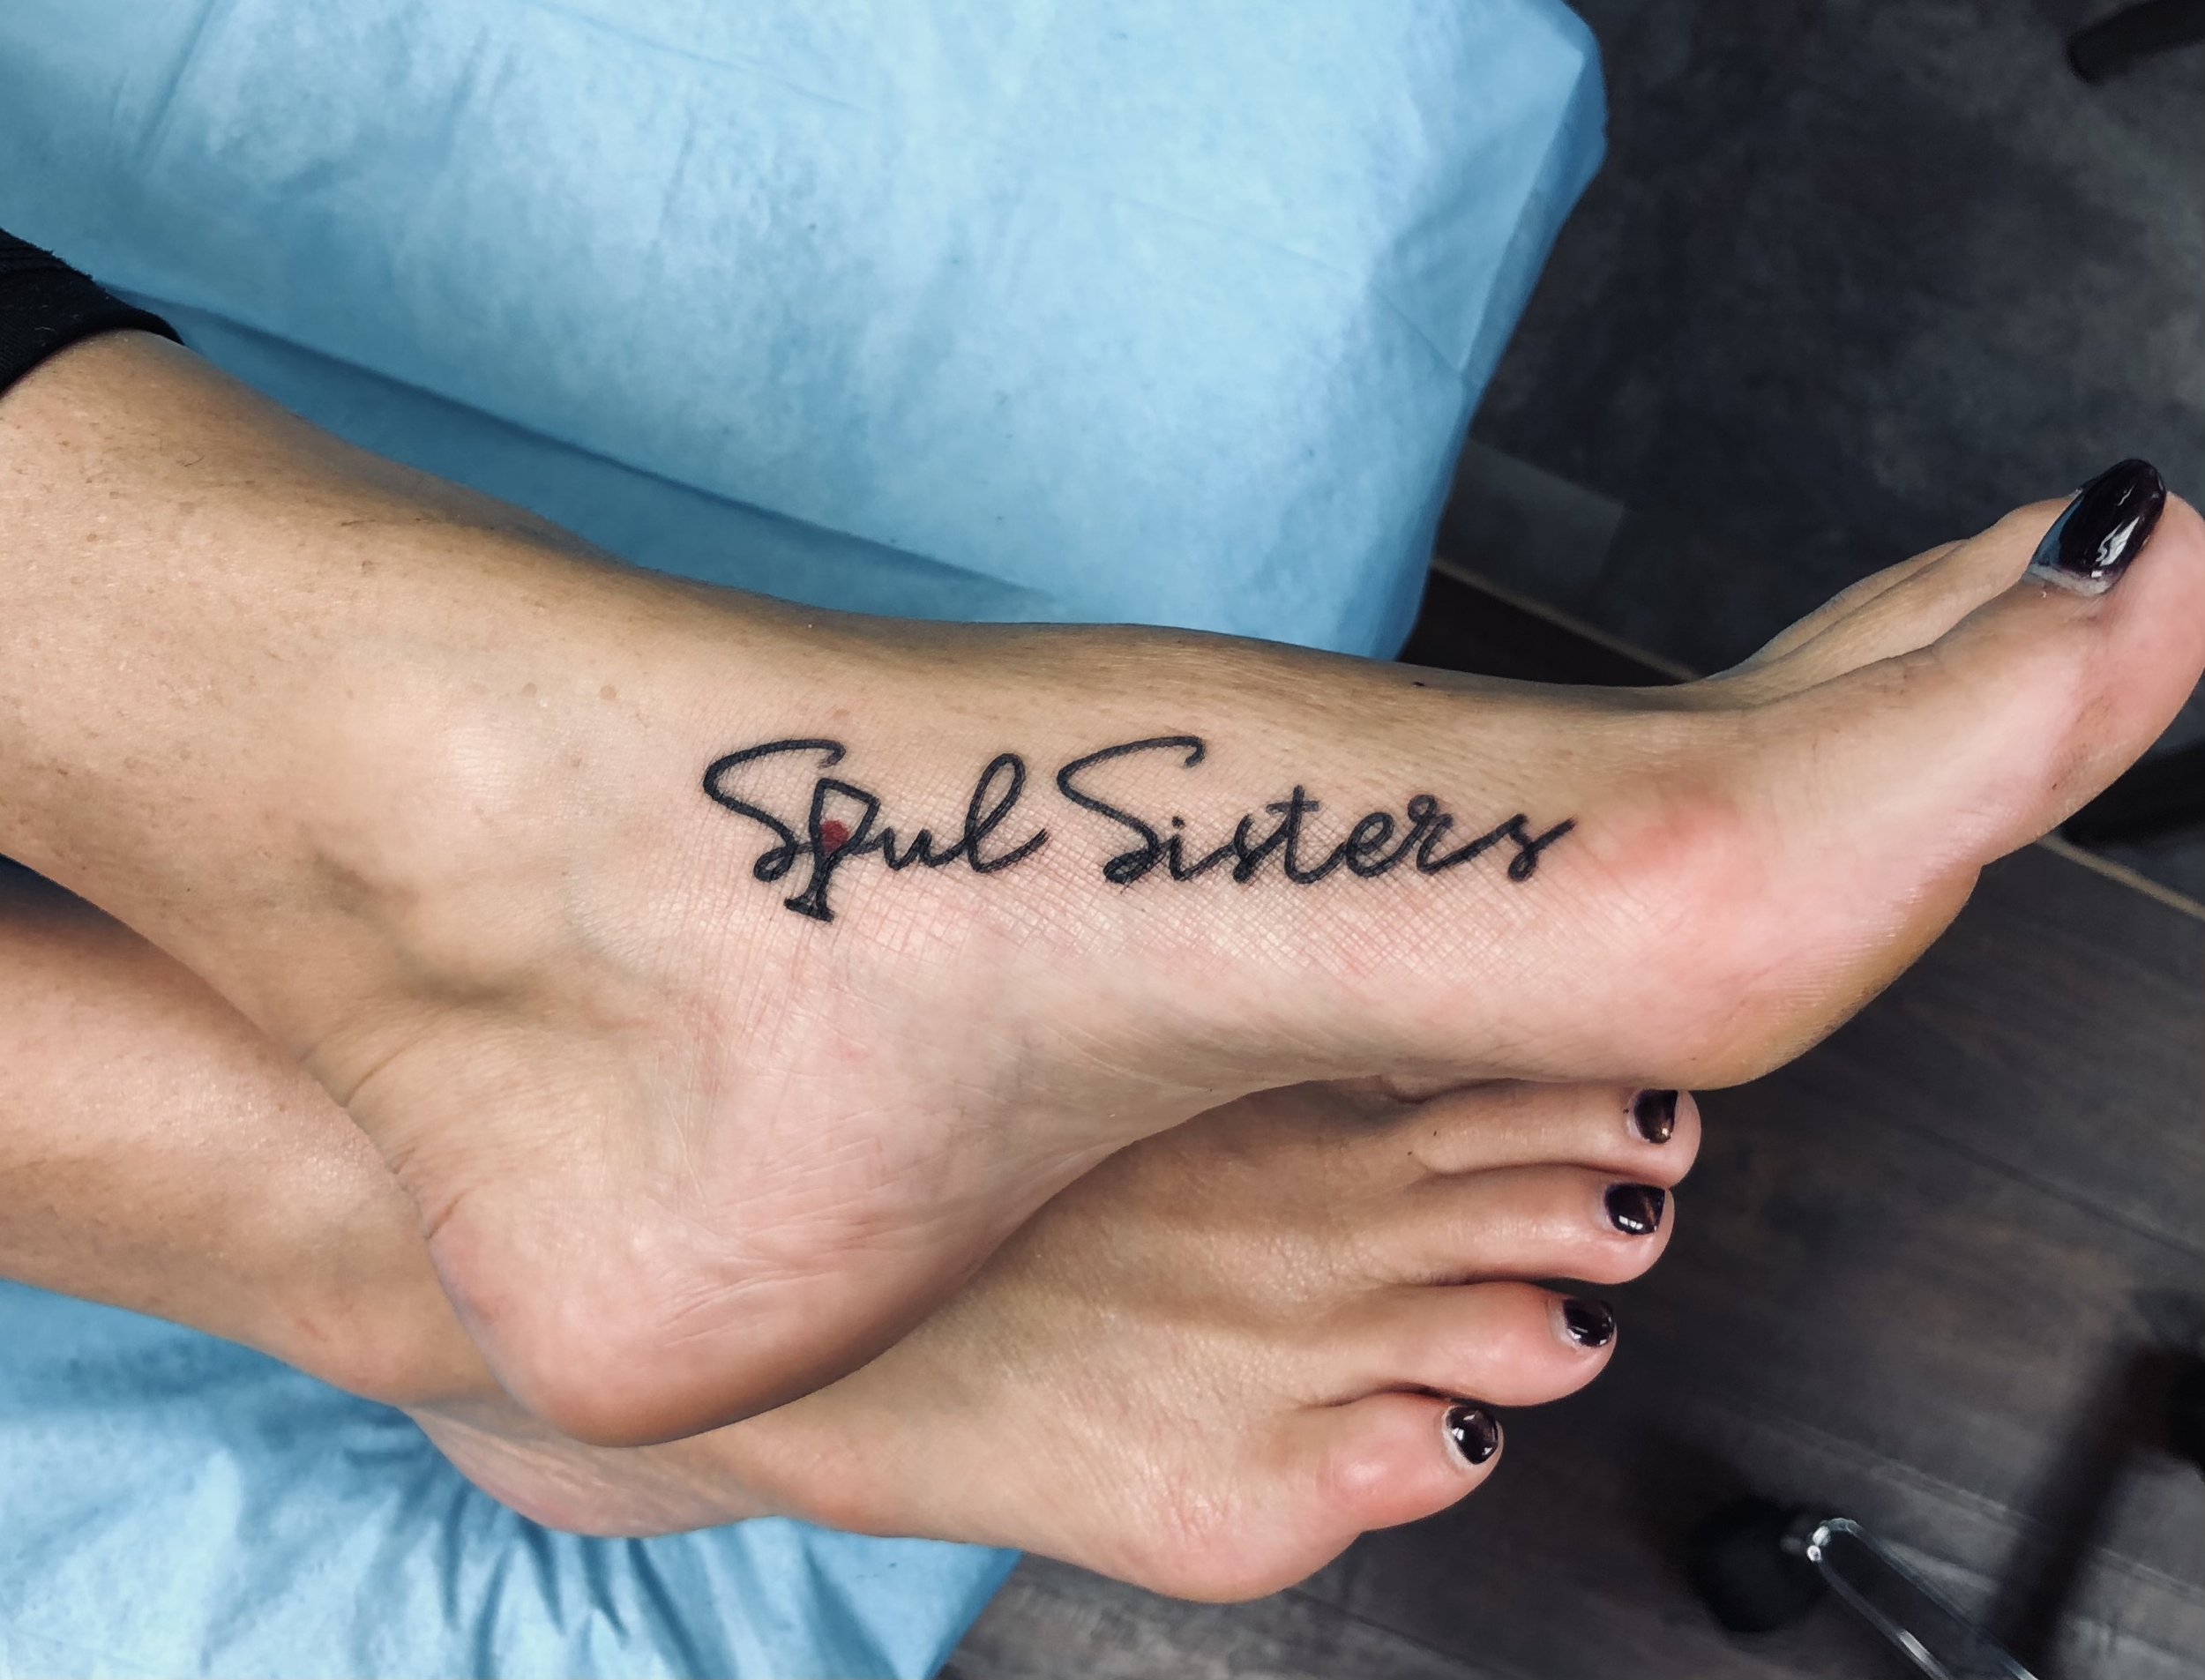 Brother-Sister Tattoos | POPSUGAR Love & Sex